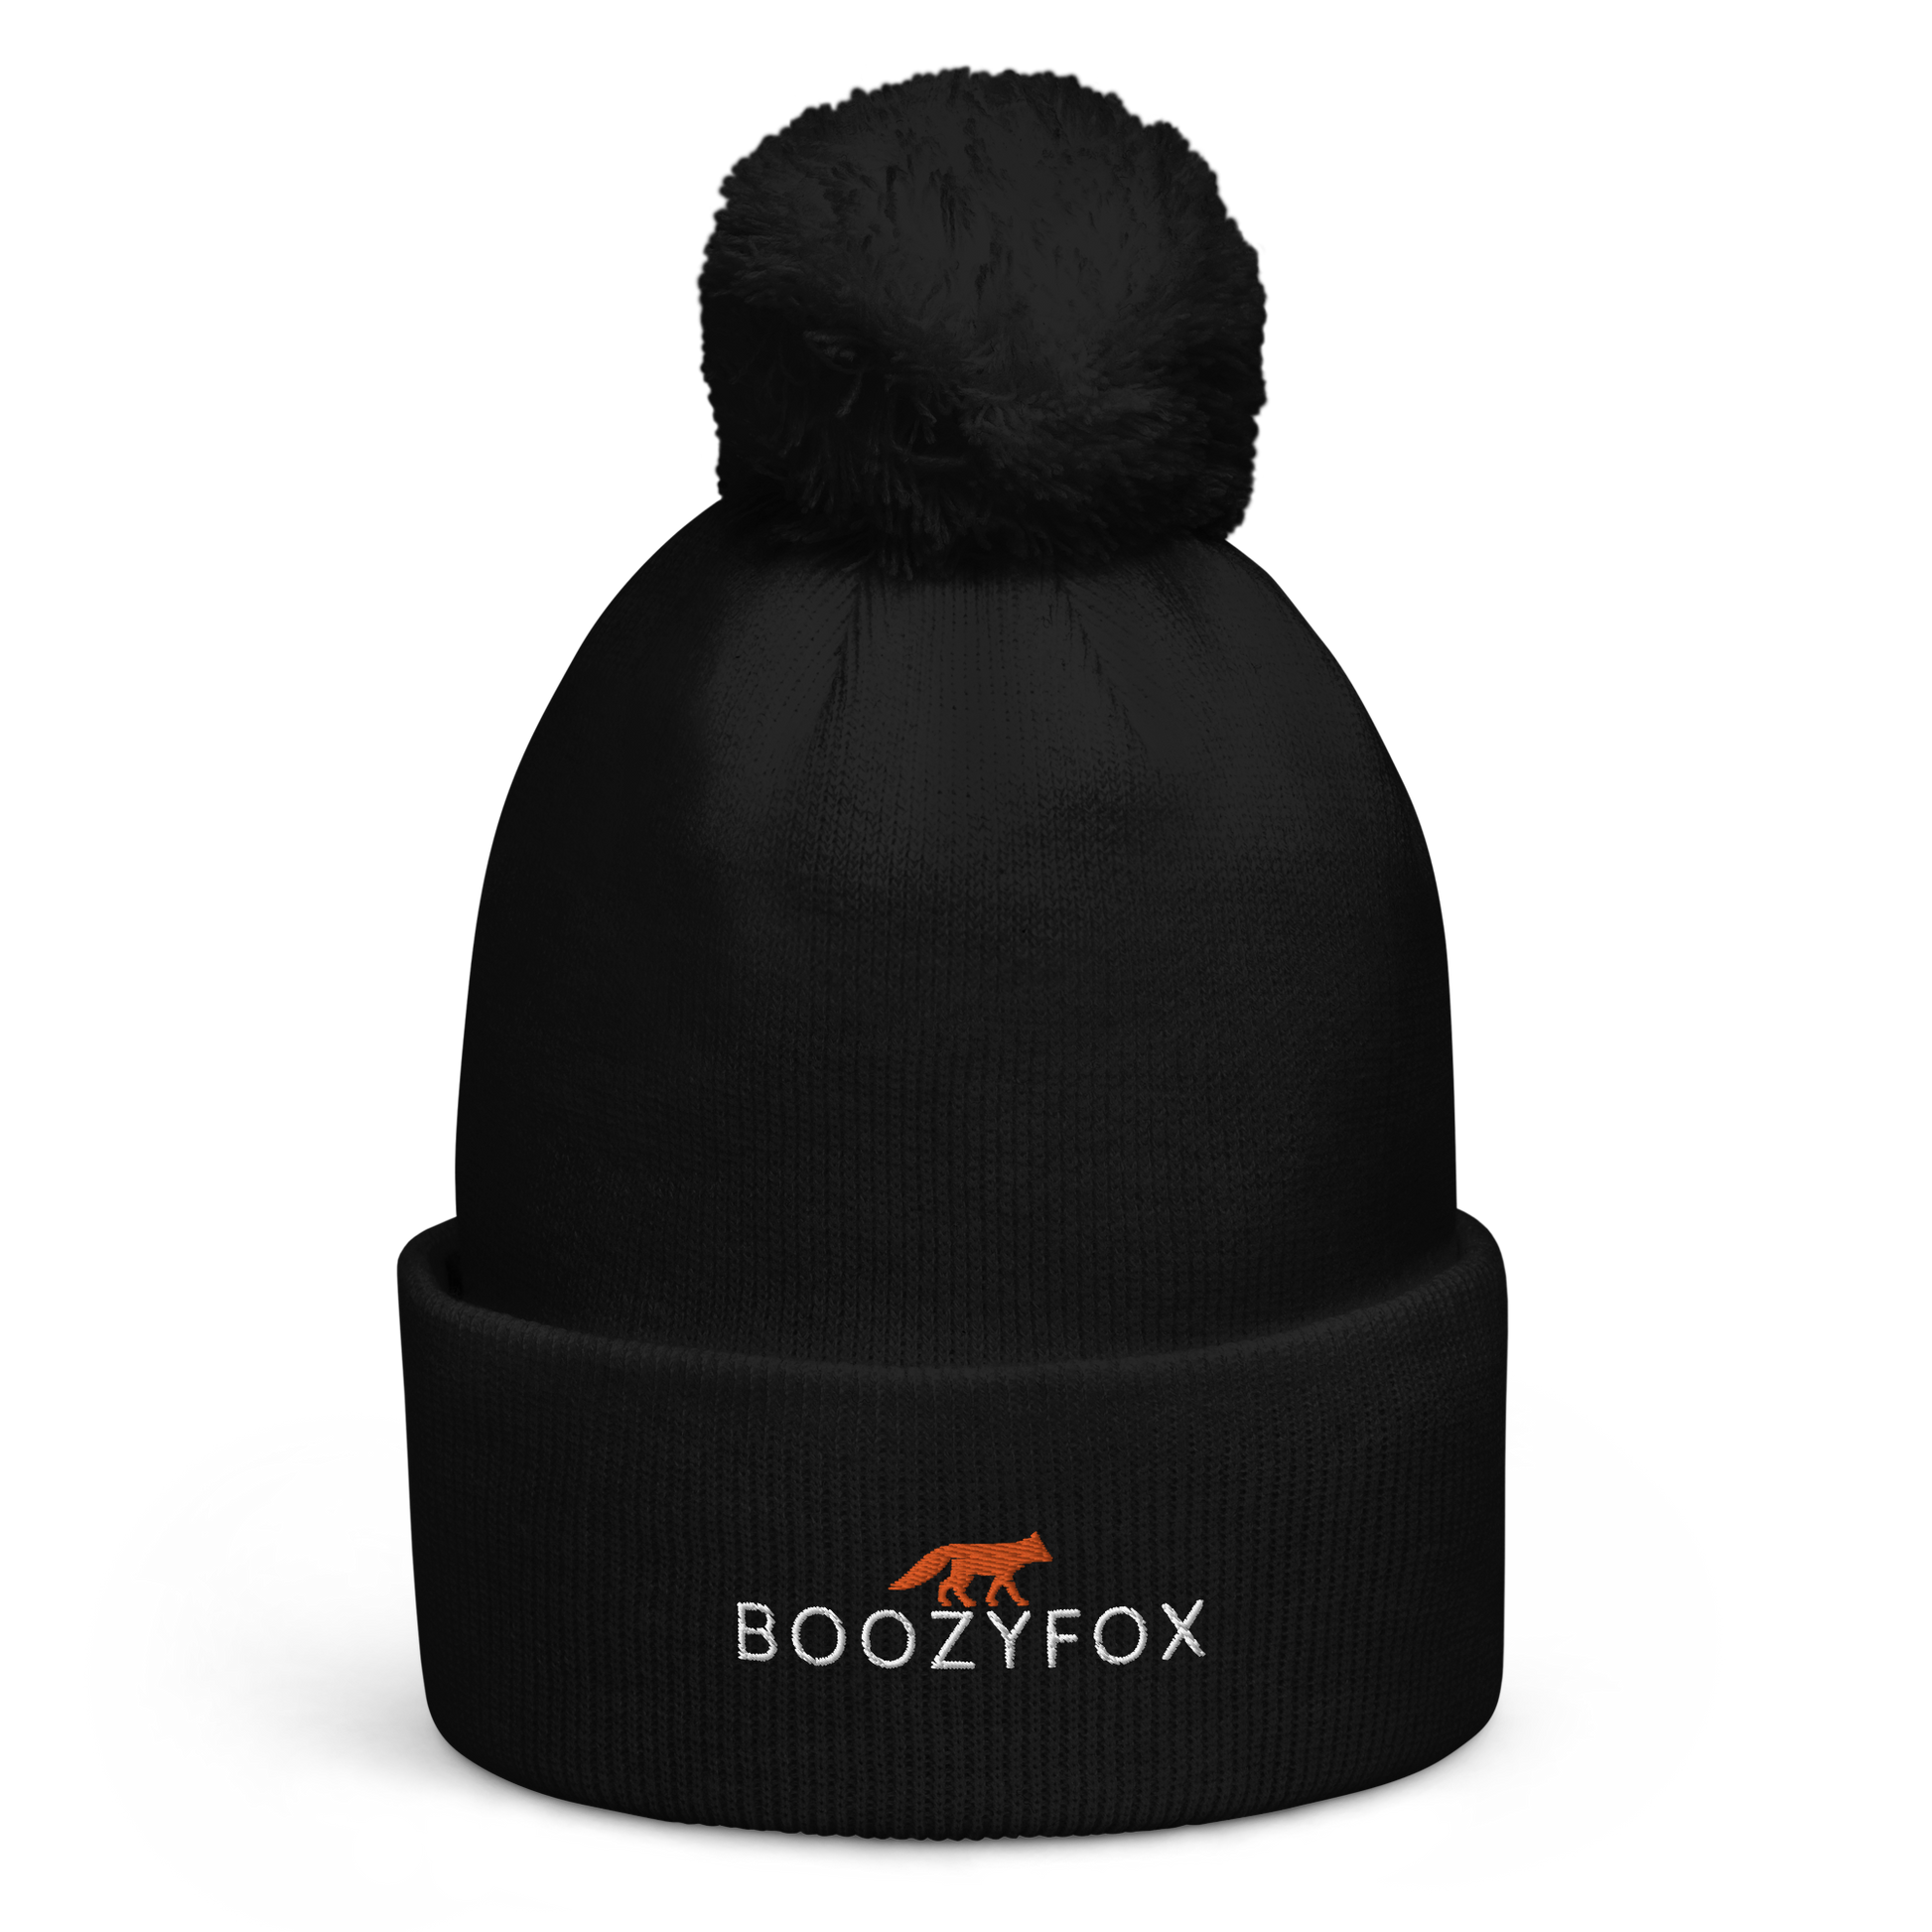 Black Pom-Pom Beanie With An Embroidered Boozy Fox Logo On Fold - Shop Pom-Pom Beanies Online - Boozy Fox